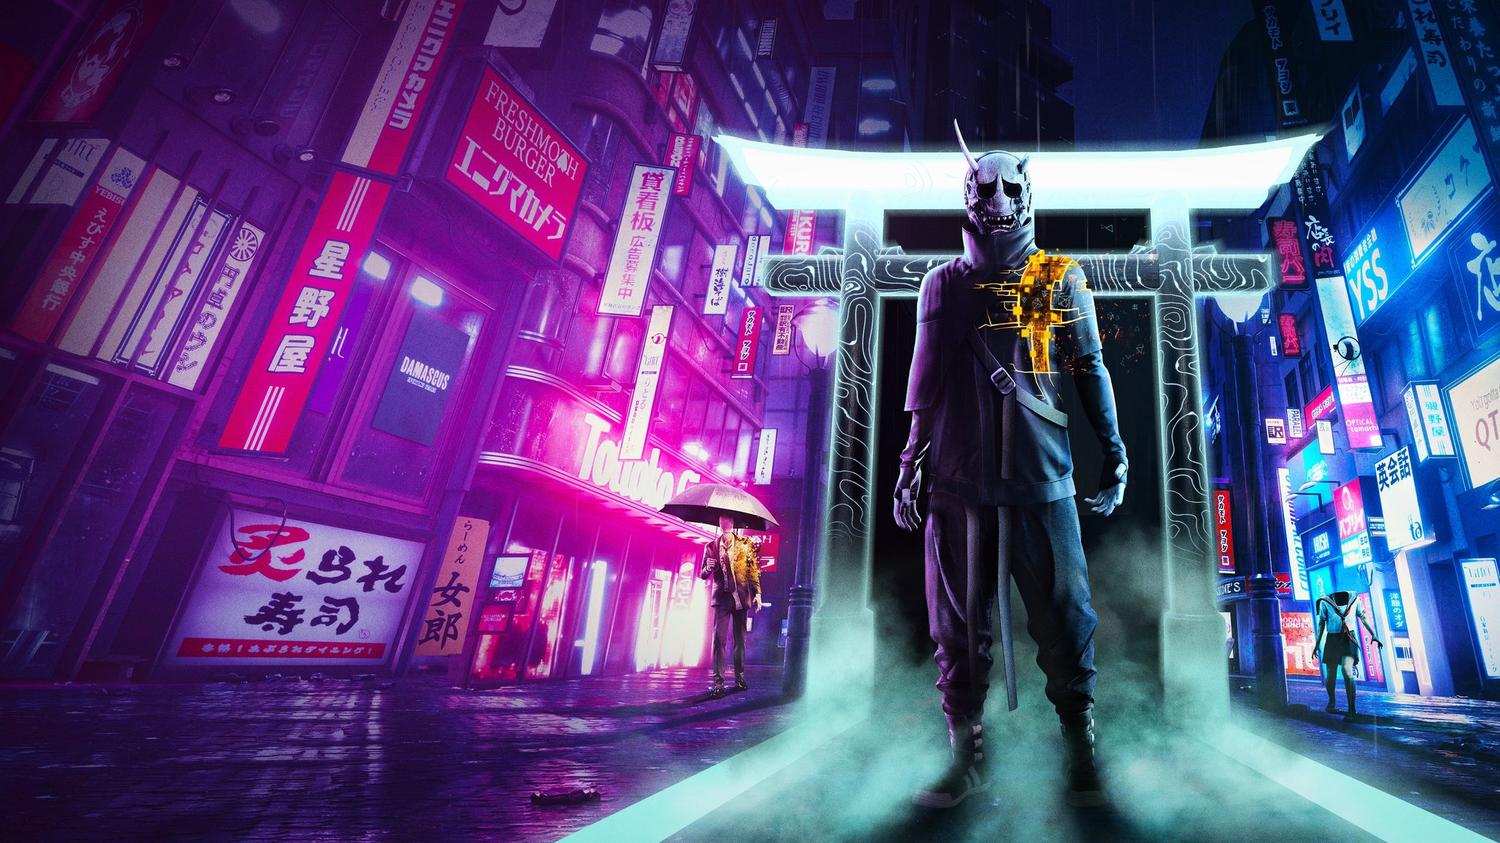 Ghostwire : Tokyo | PlayStation 5 | ANA KONU